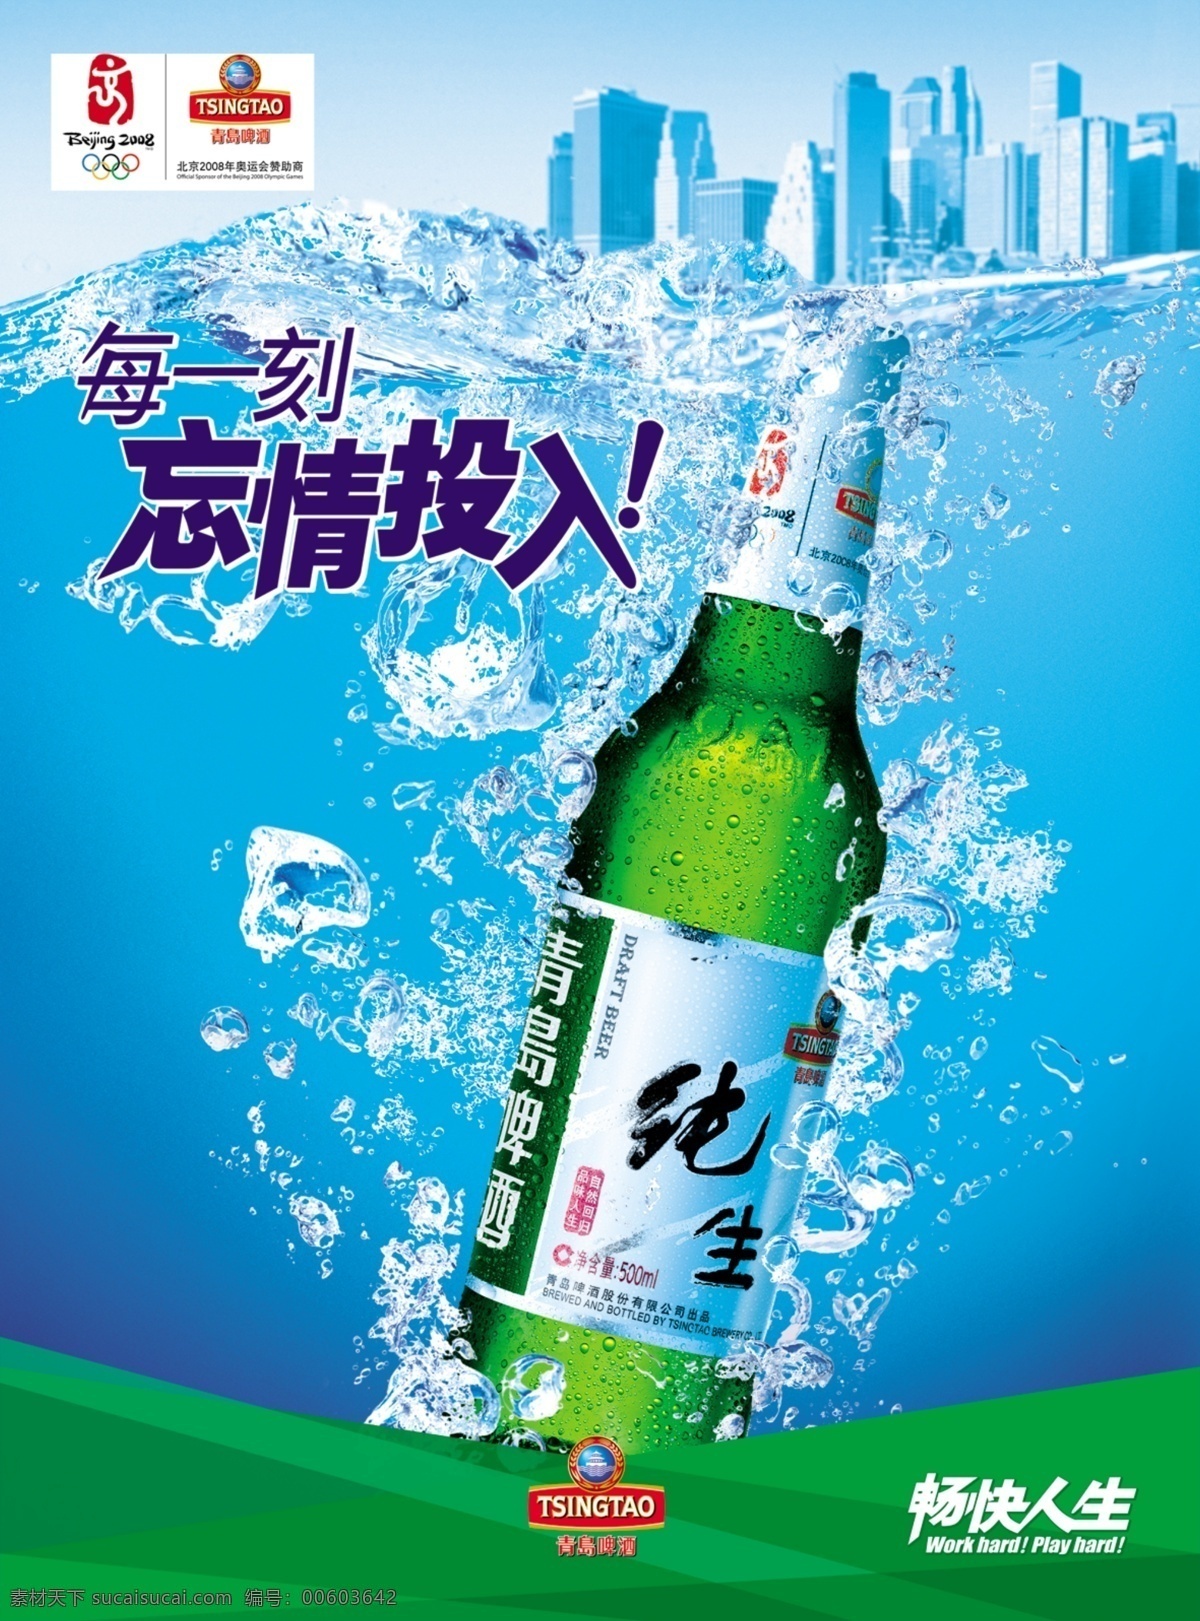 青岛纯生啤酒清凉一夏素材图片下载-素材编号00294925-素材天下图库